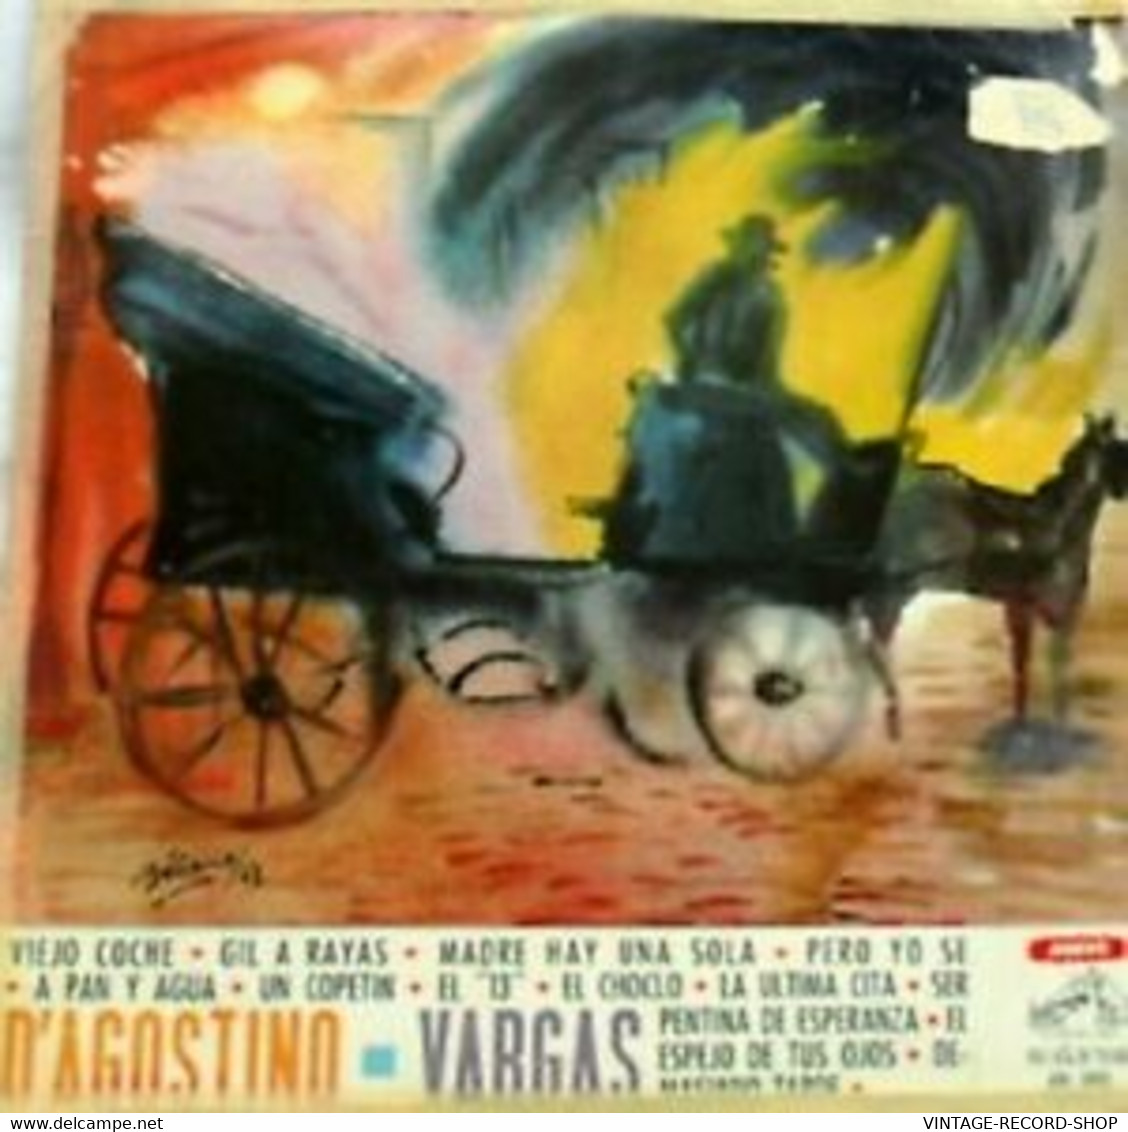 ANGEL D'AGOSTINO Y SU ORQUESTA TIPICA CON ANGEL VARGAS VIEJO COCHE RCA VICTOR - Sonstige - Spanische Musik